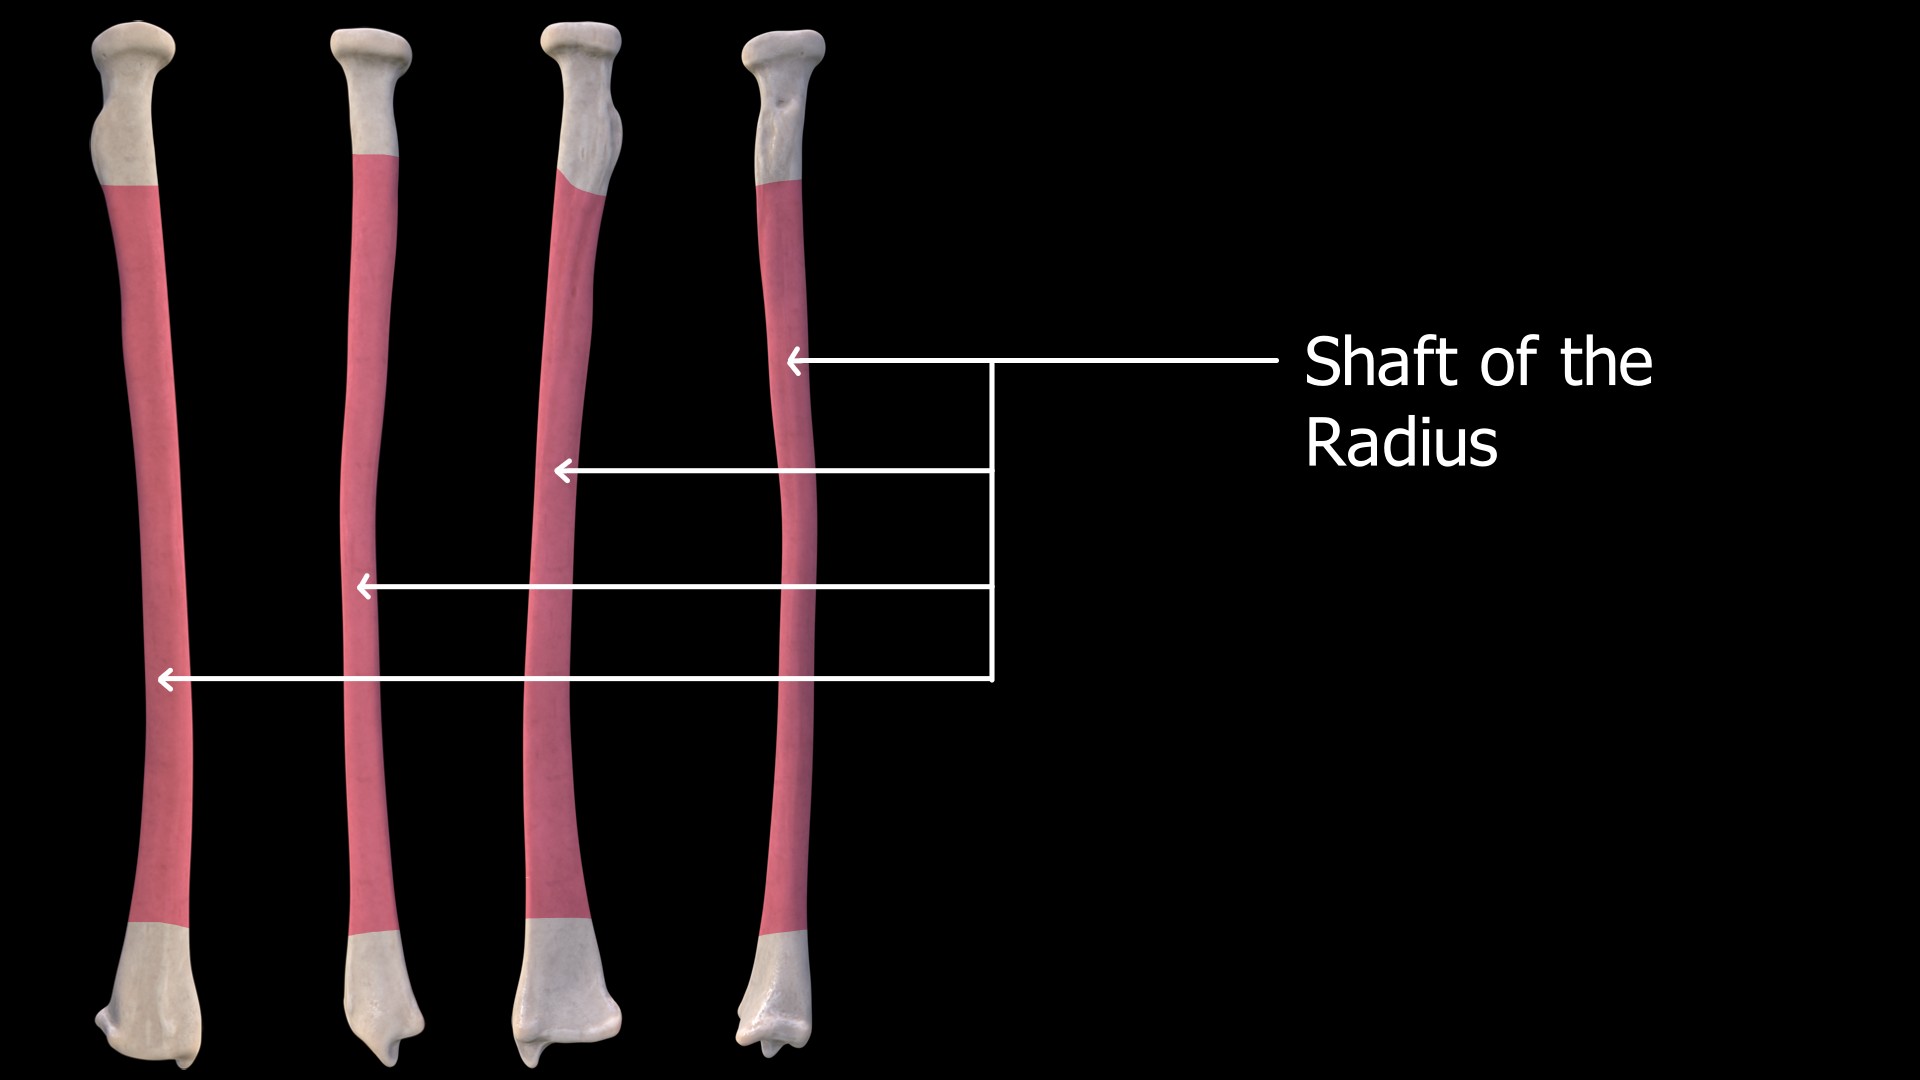 Shaft of the Radius